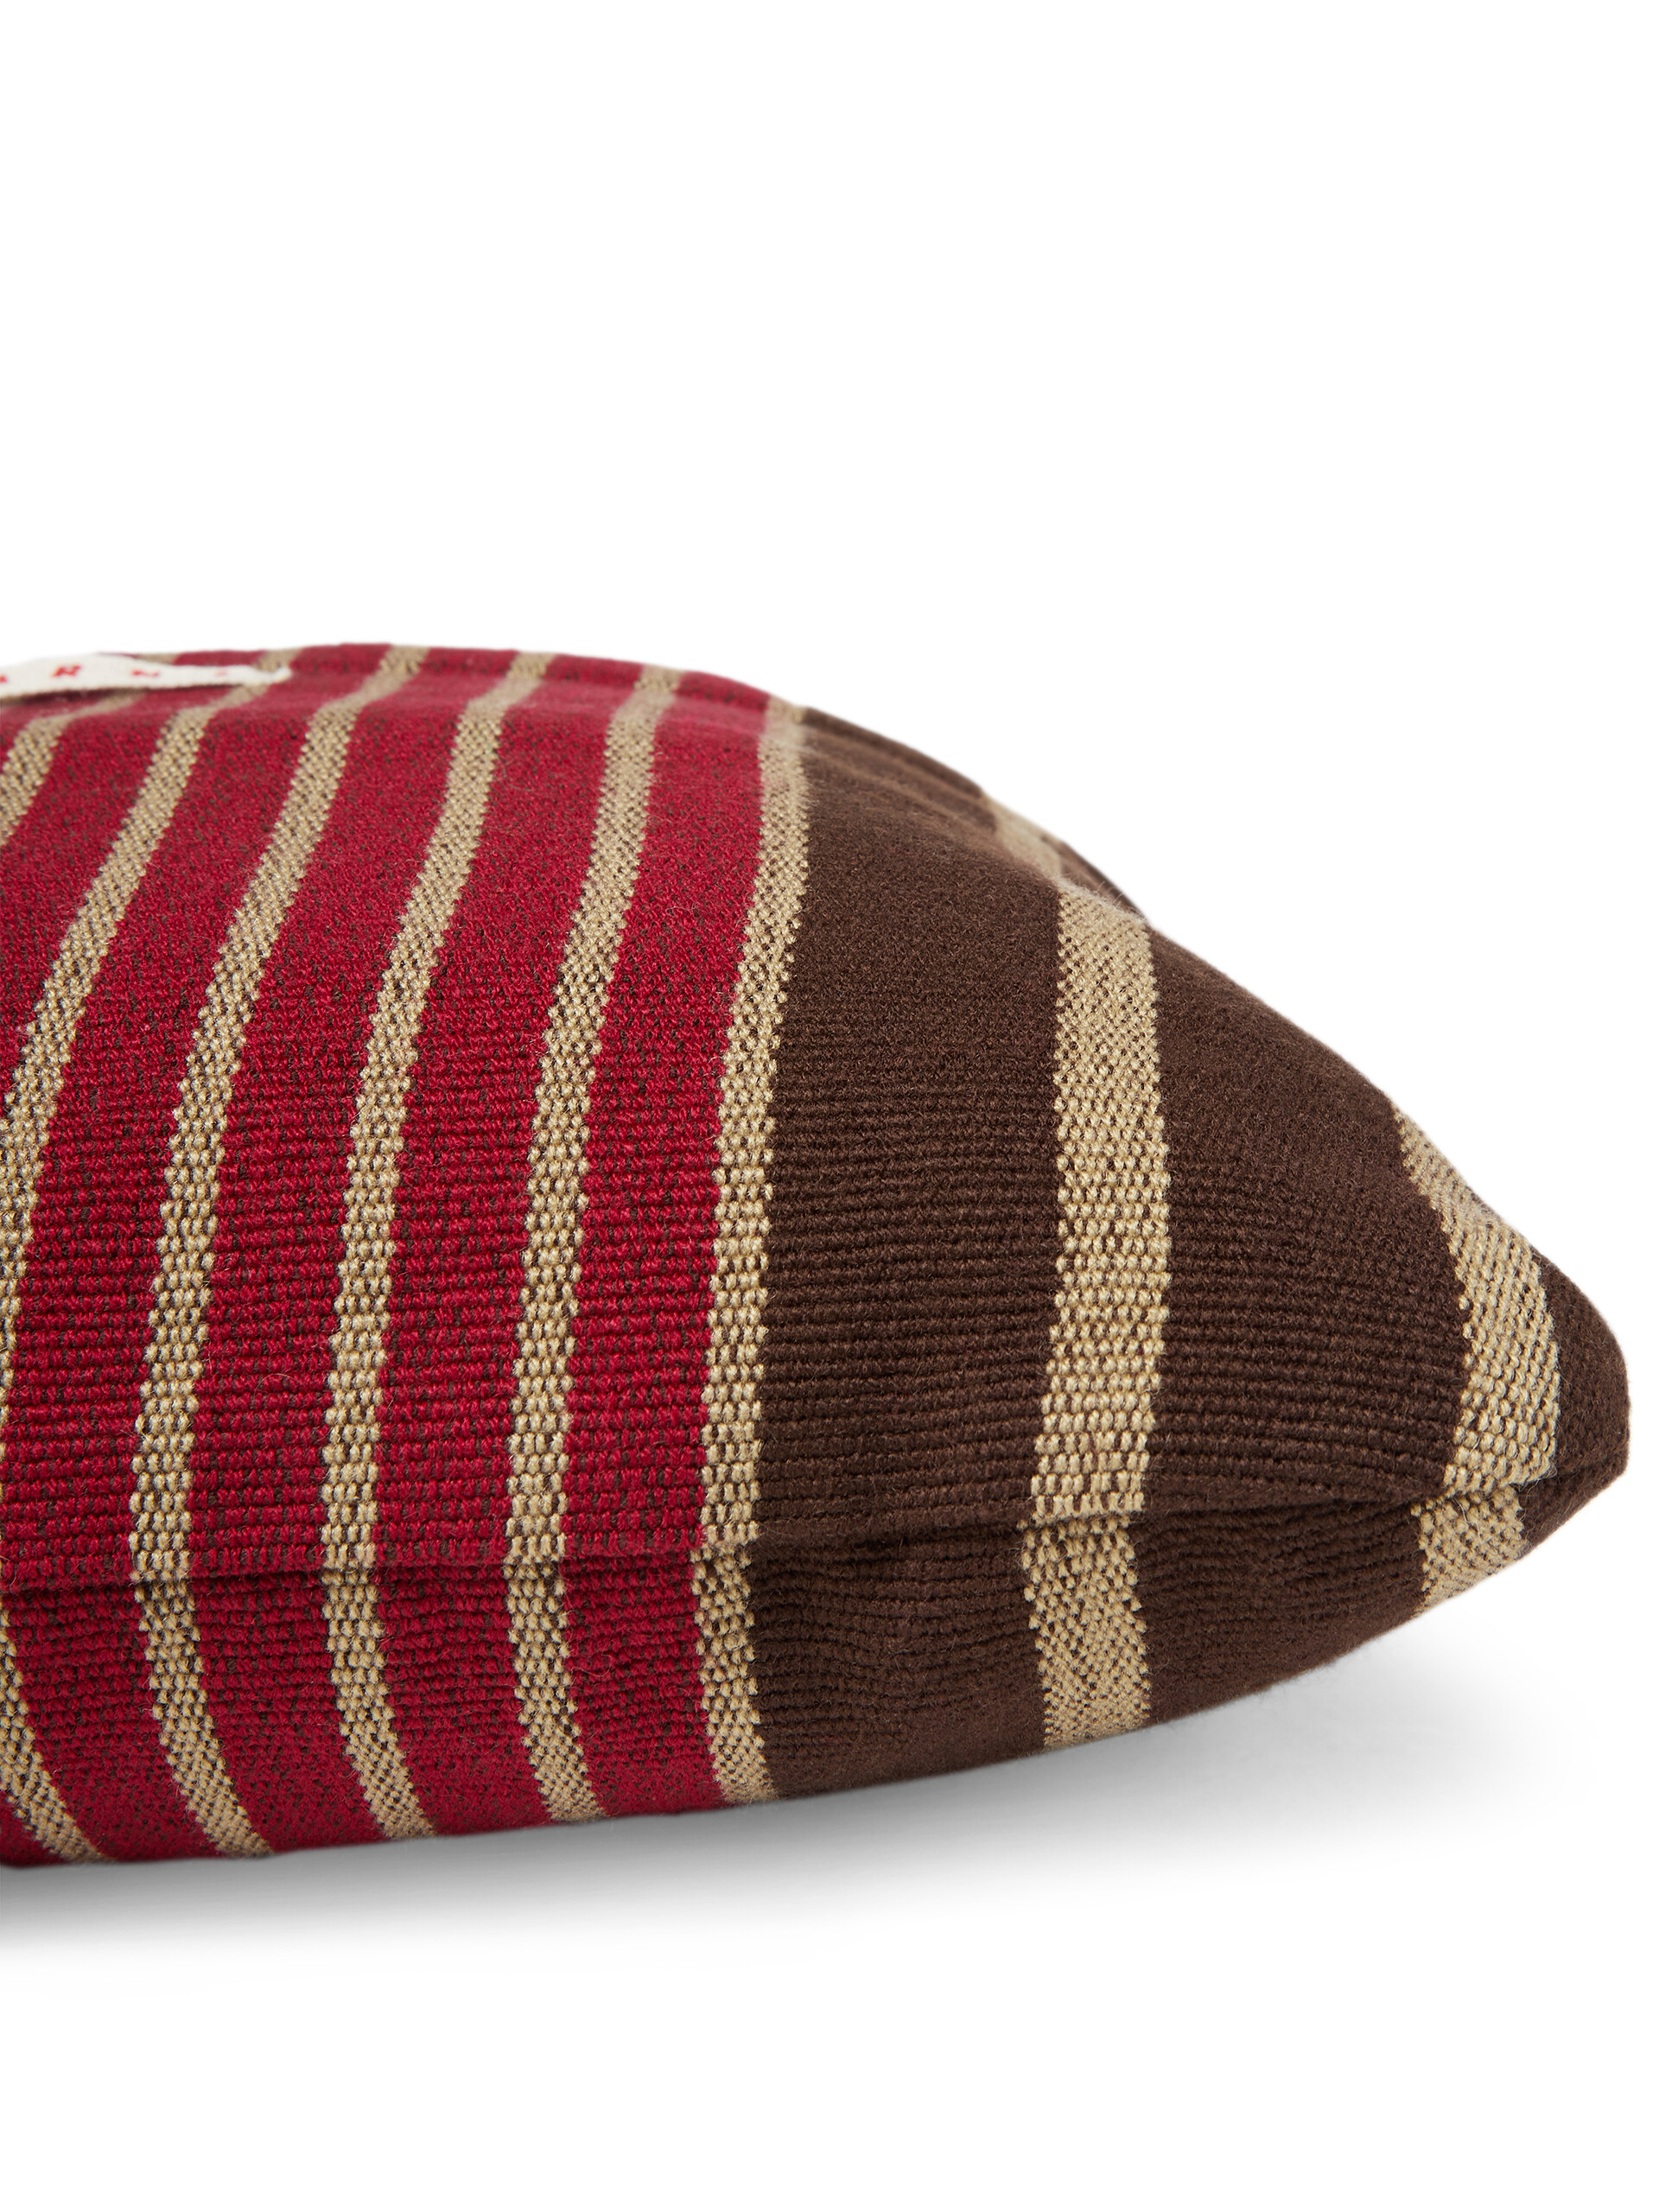 MARNI MARKET square cushion in multicolor brown fabric - Furniture - Image 3